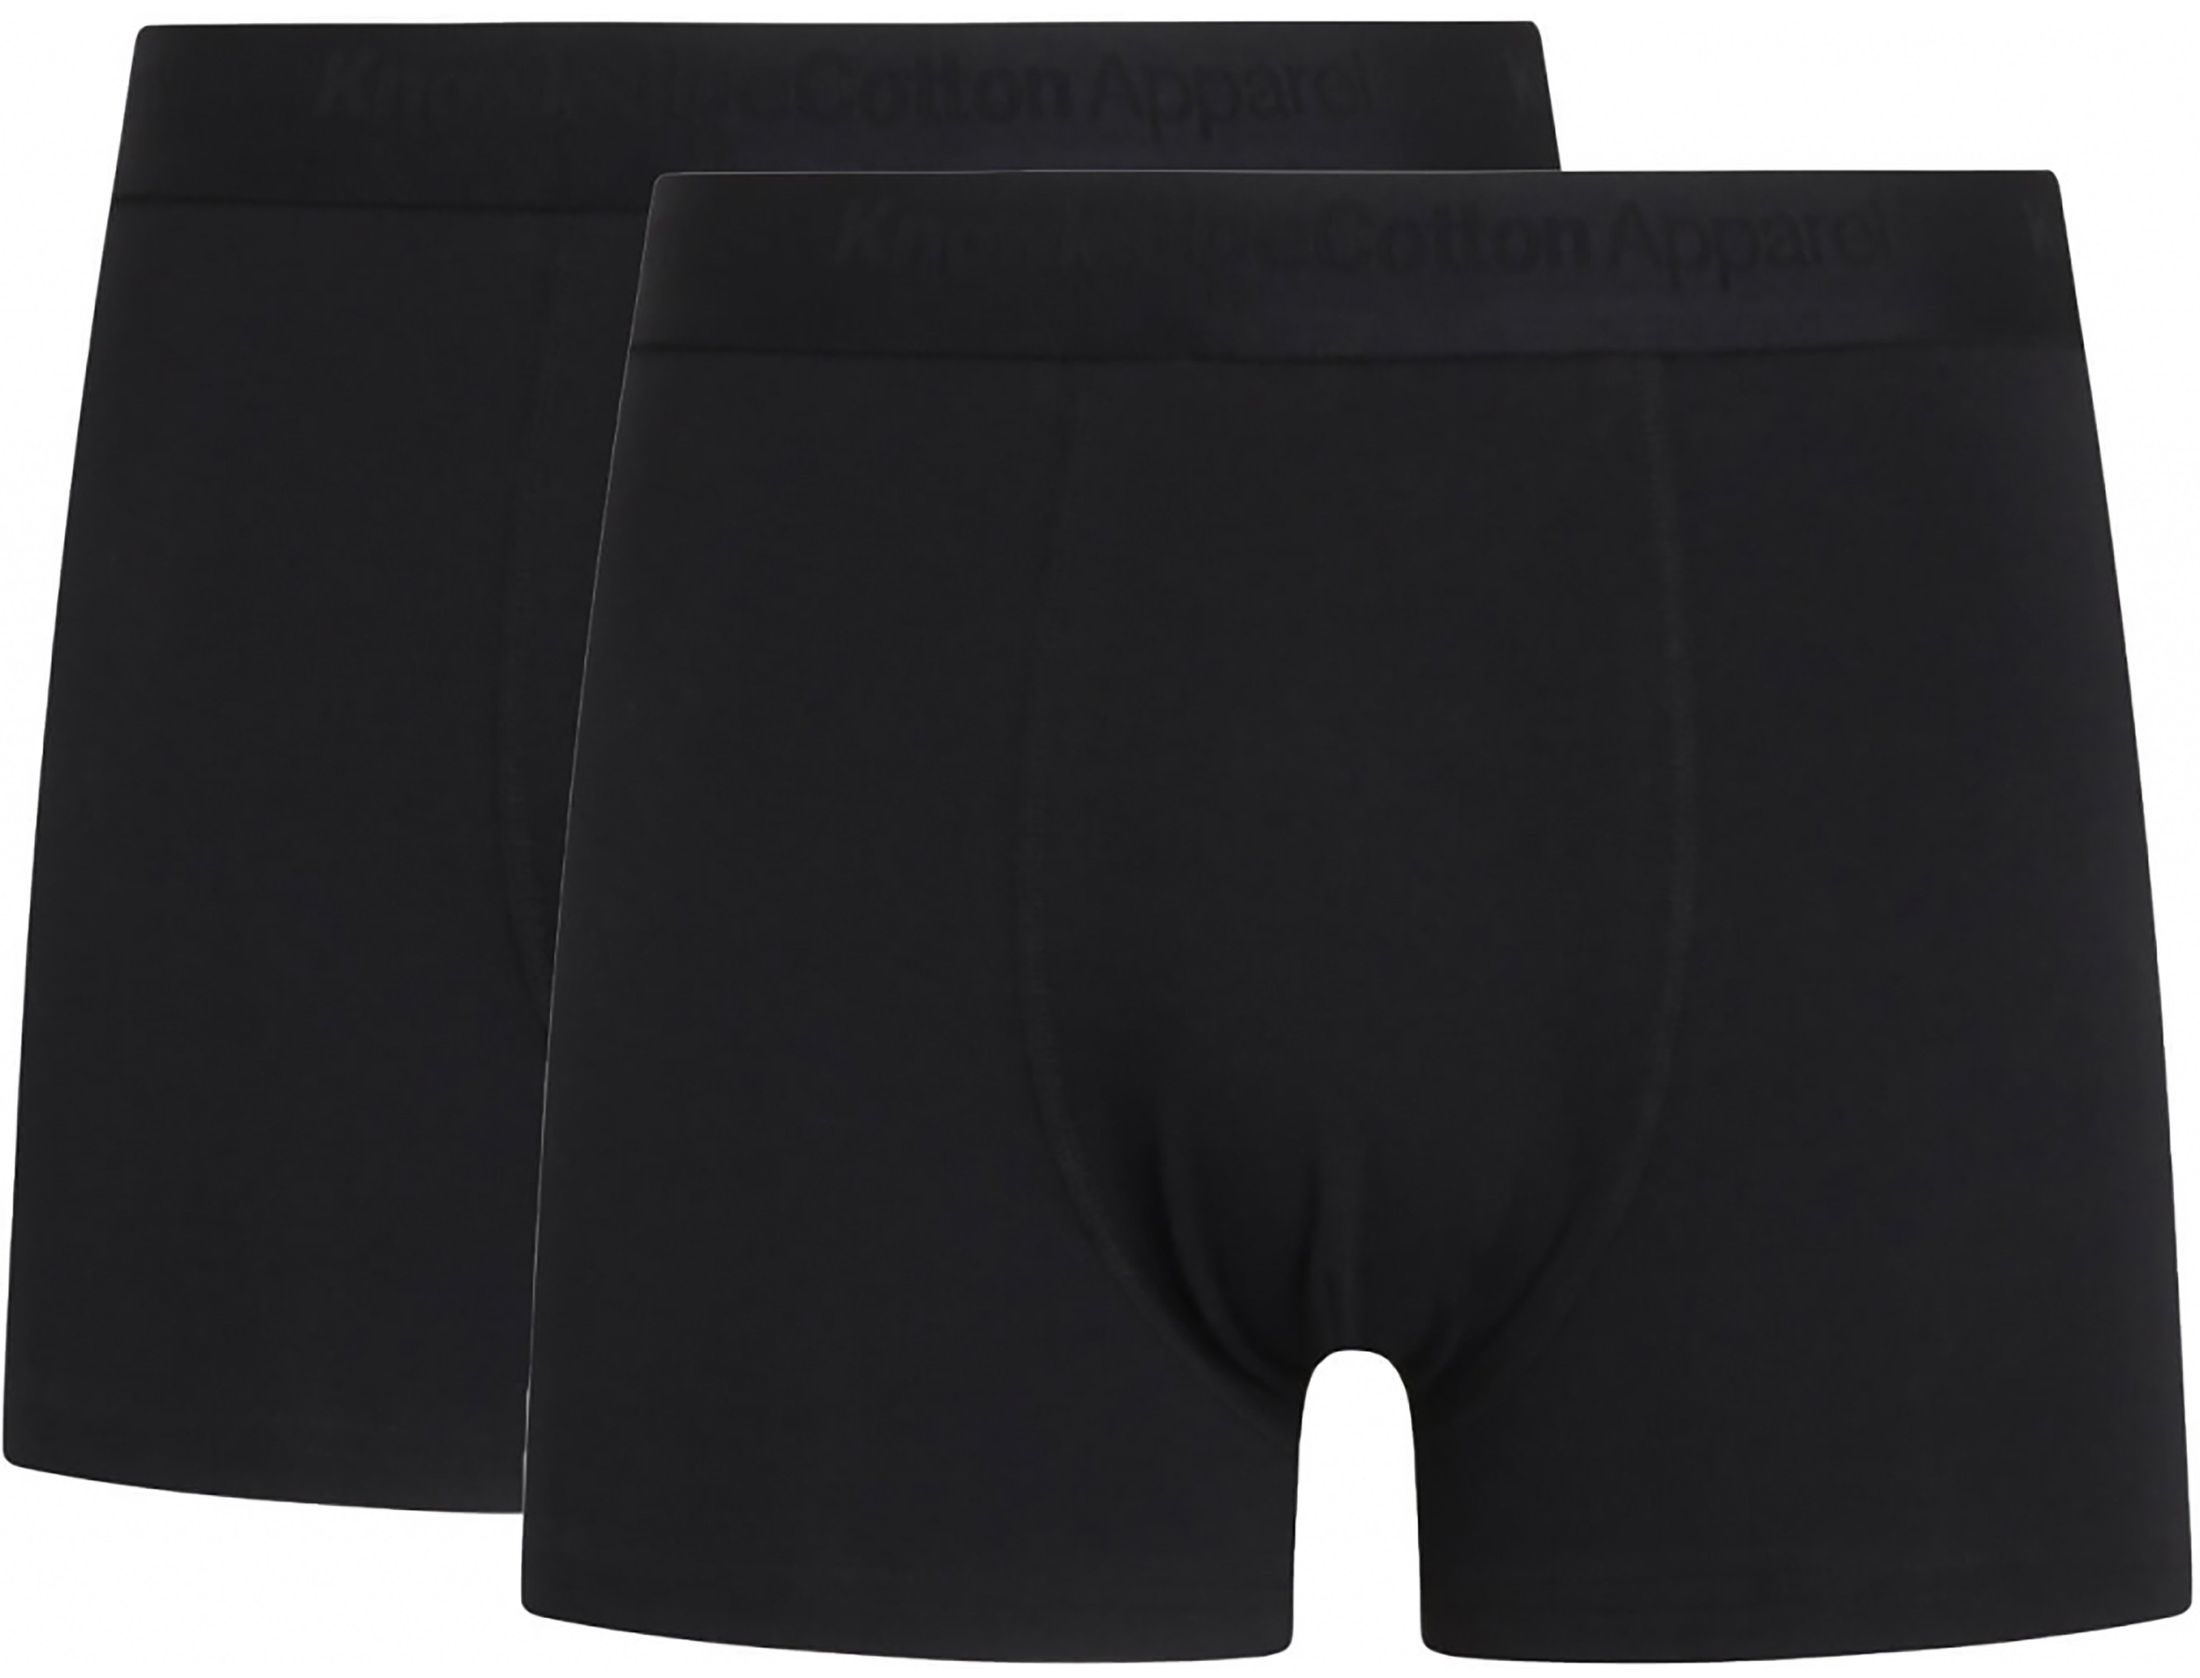 KnowledgeCotton Apparel boxer shorts maple 2-pack black size l